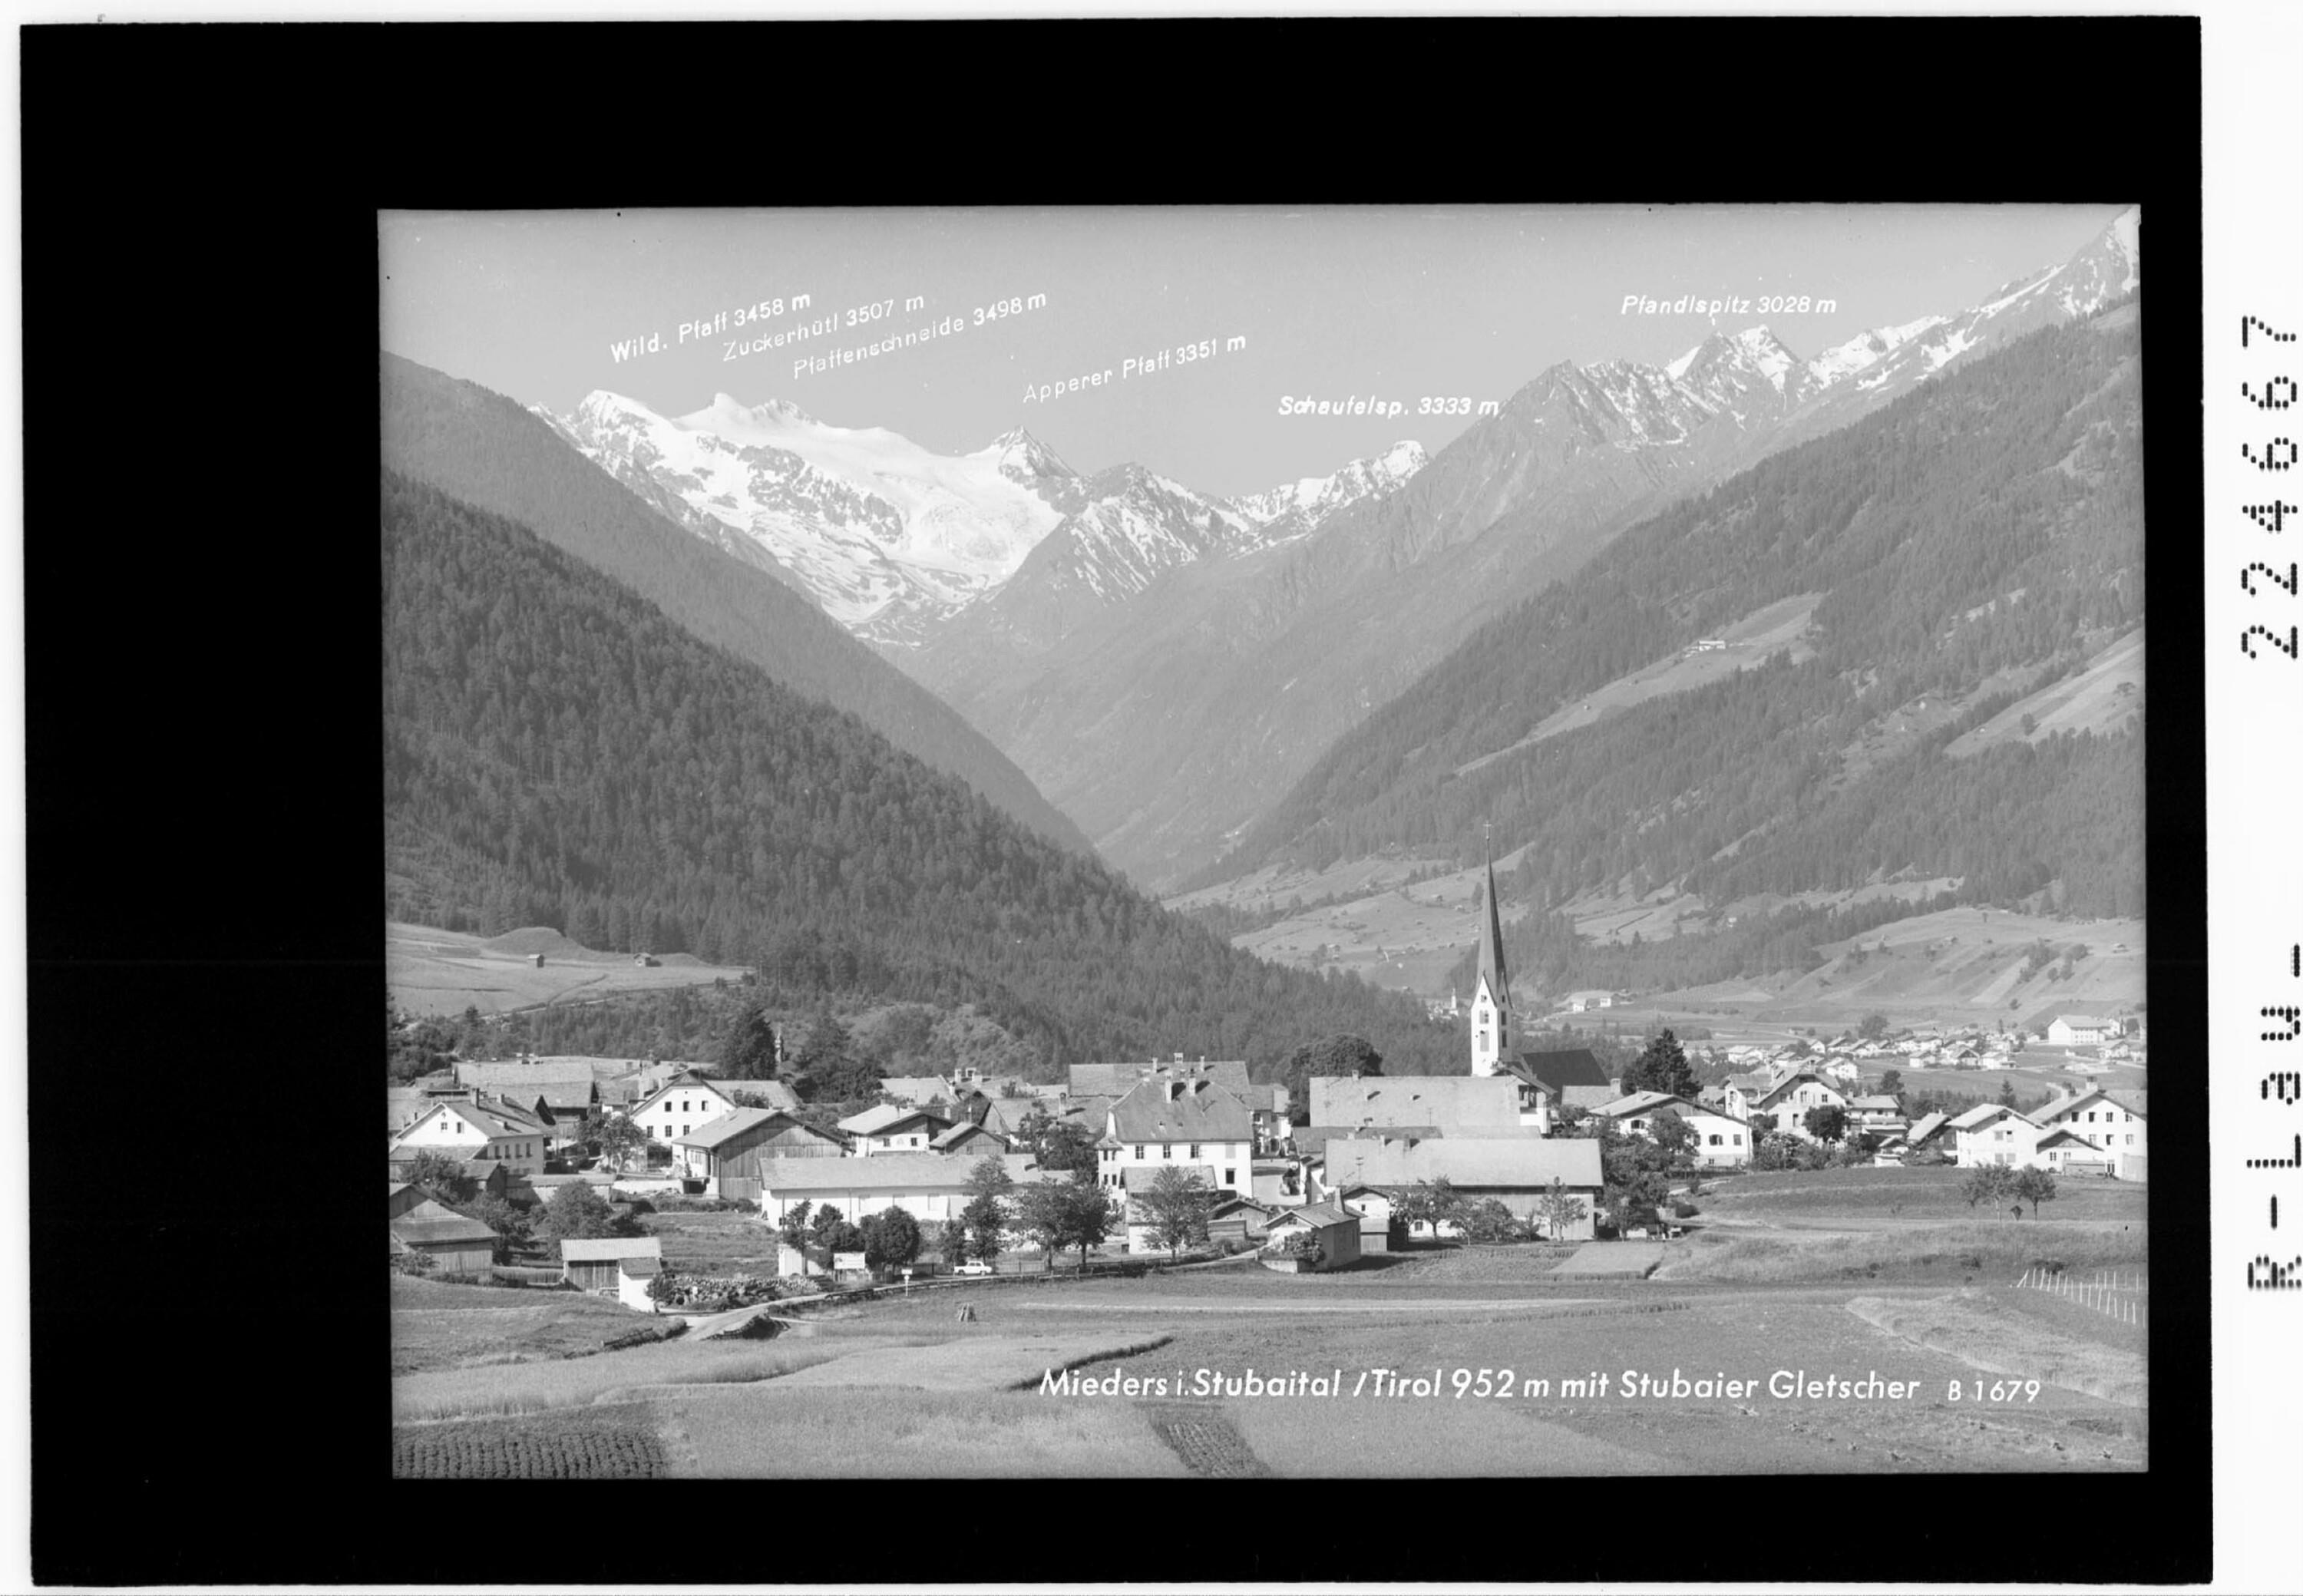 Mieders im Stubaital / Tirol 952 m mit Stubaier Gletscher></div>


    <hr>
    <div class=